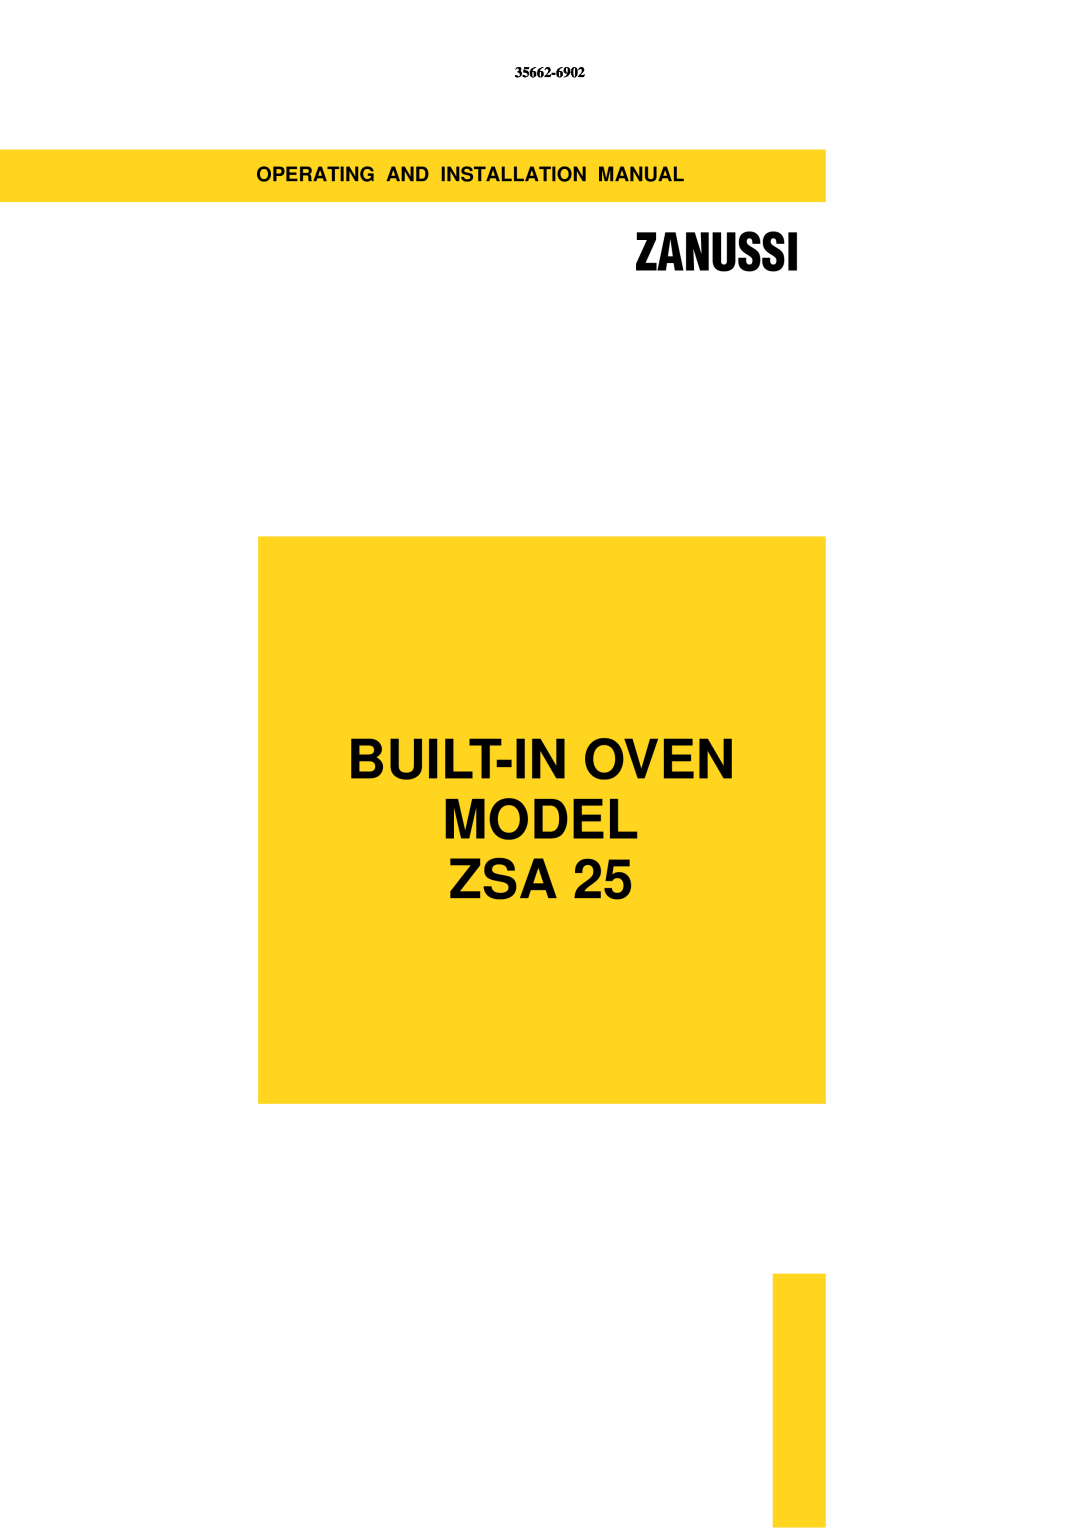 Zanussi ZSA 25 installation manual Built-In Oven Model Zsa, Zanussi, 35662-6902 